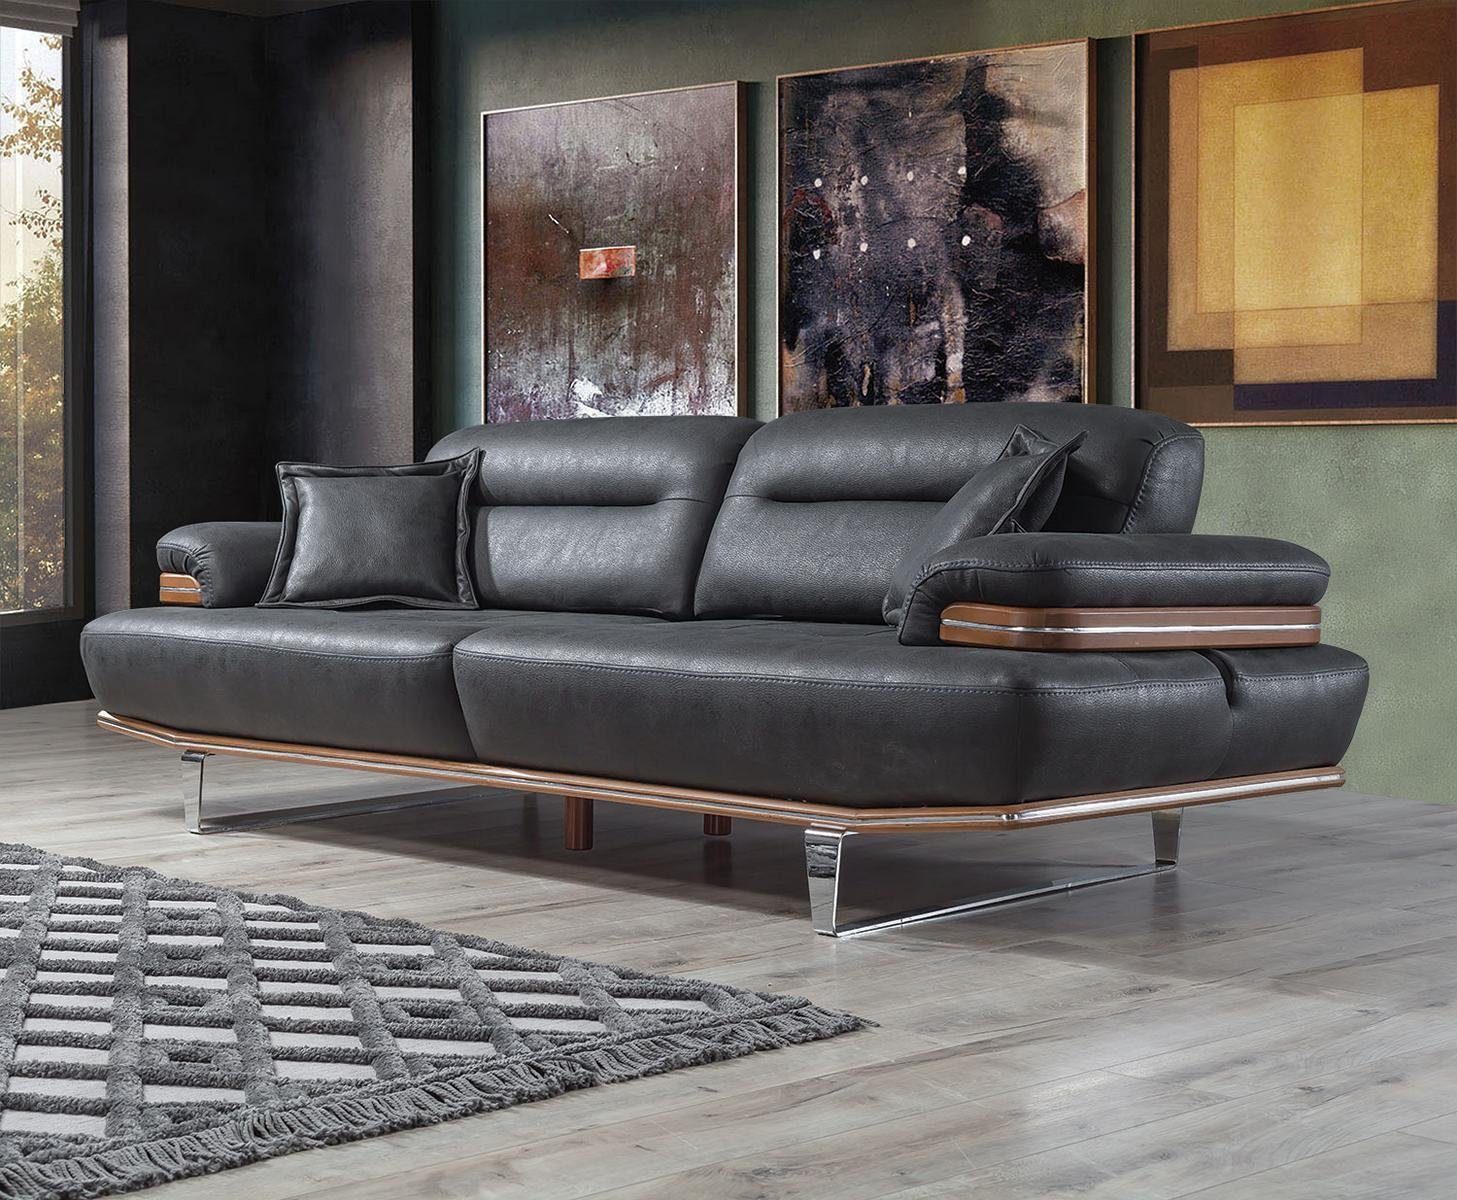 JVmoebel Sofa Wohnzimmer Sofa Couch Modern Dreisitzer Modern Polster Sitz Designer, 1 Teile, MAde in Europa | Alle Sofas